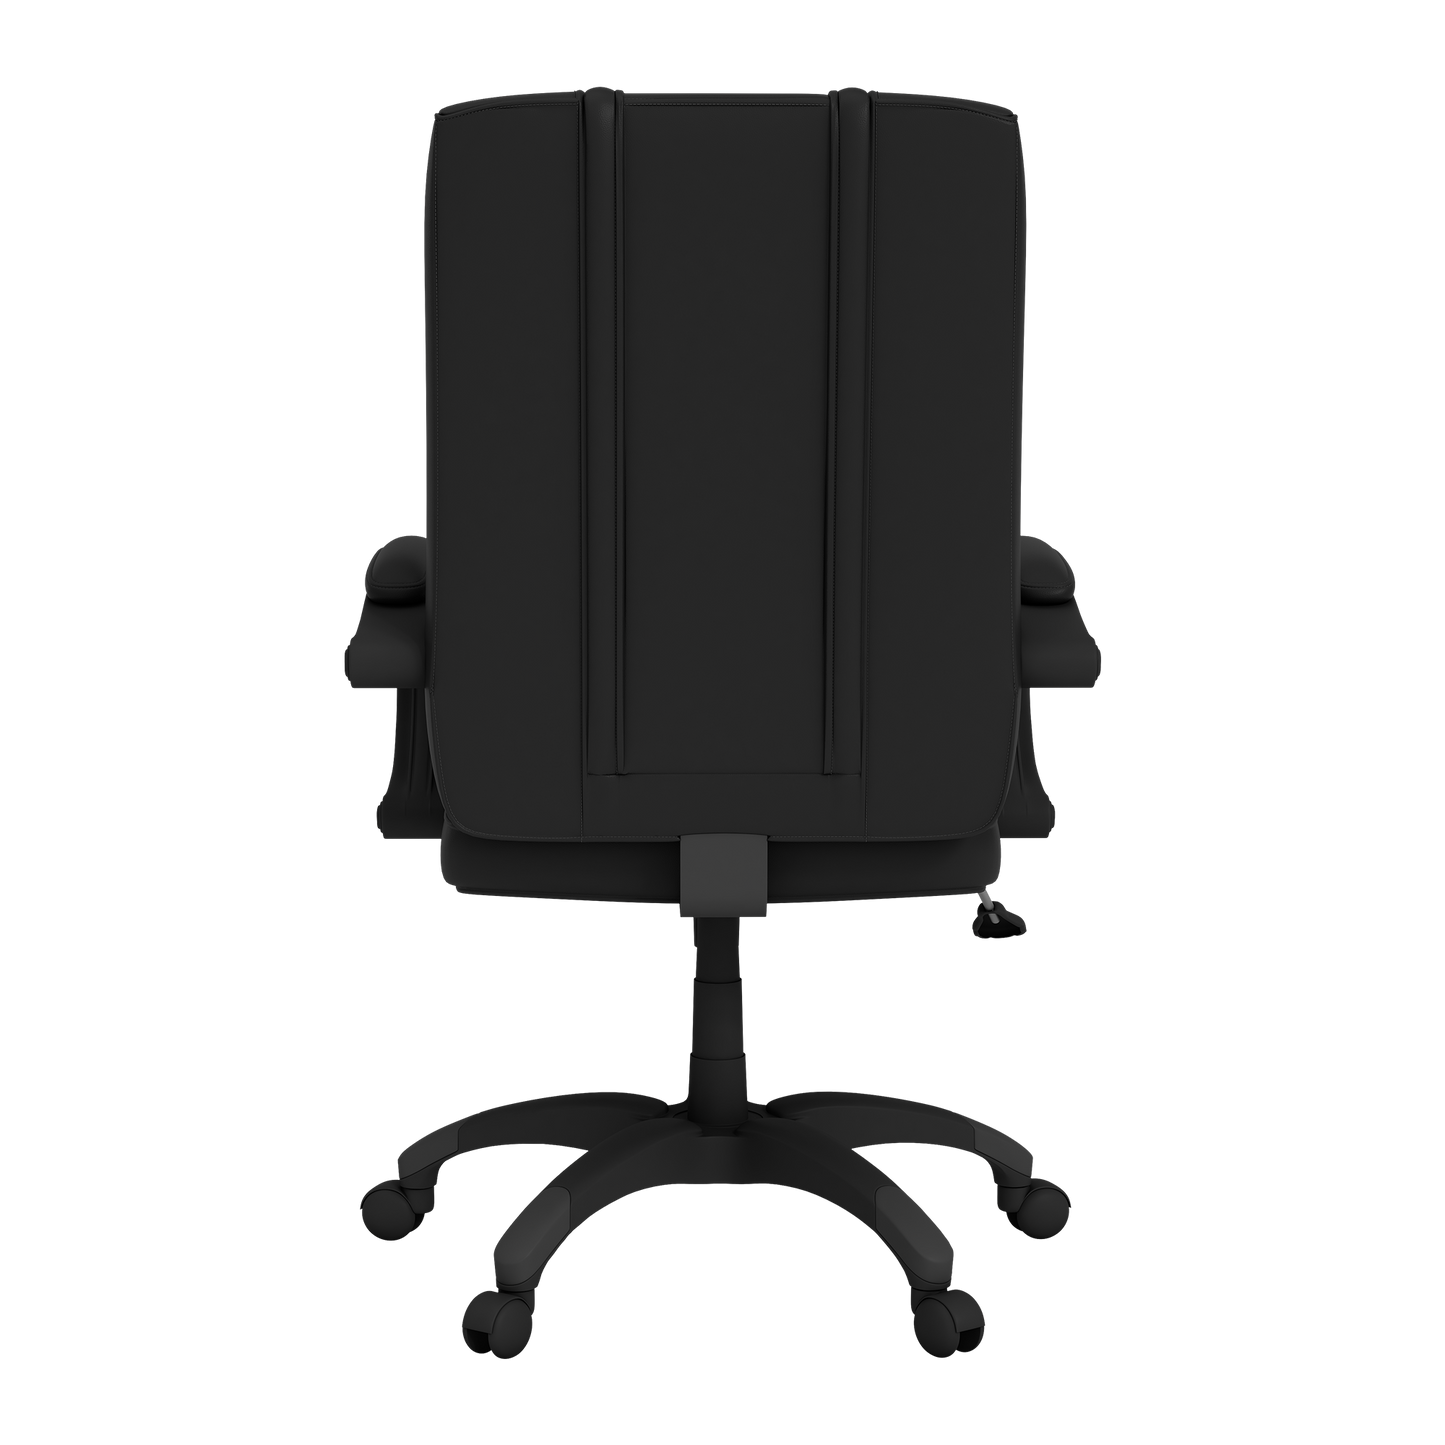 Office Chair 1000 with Arizona Diamondbacks Primary